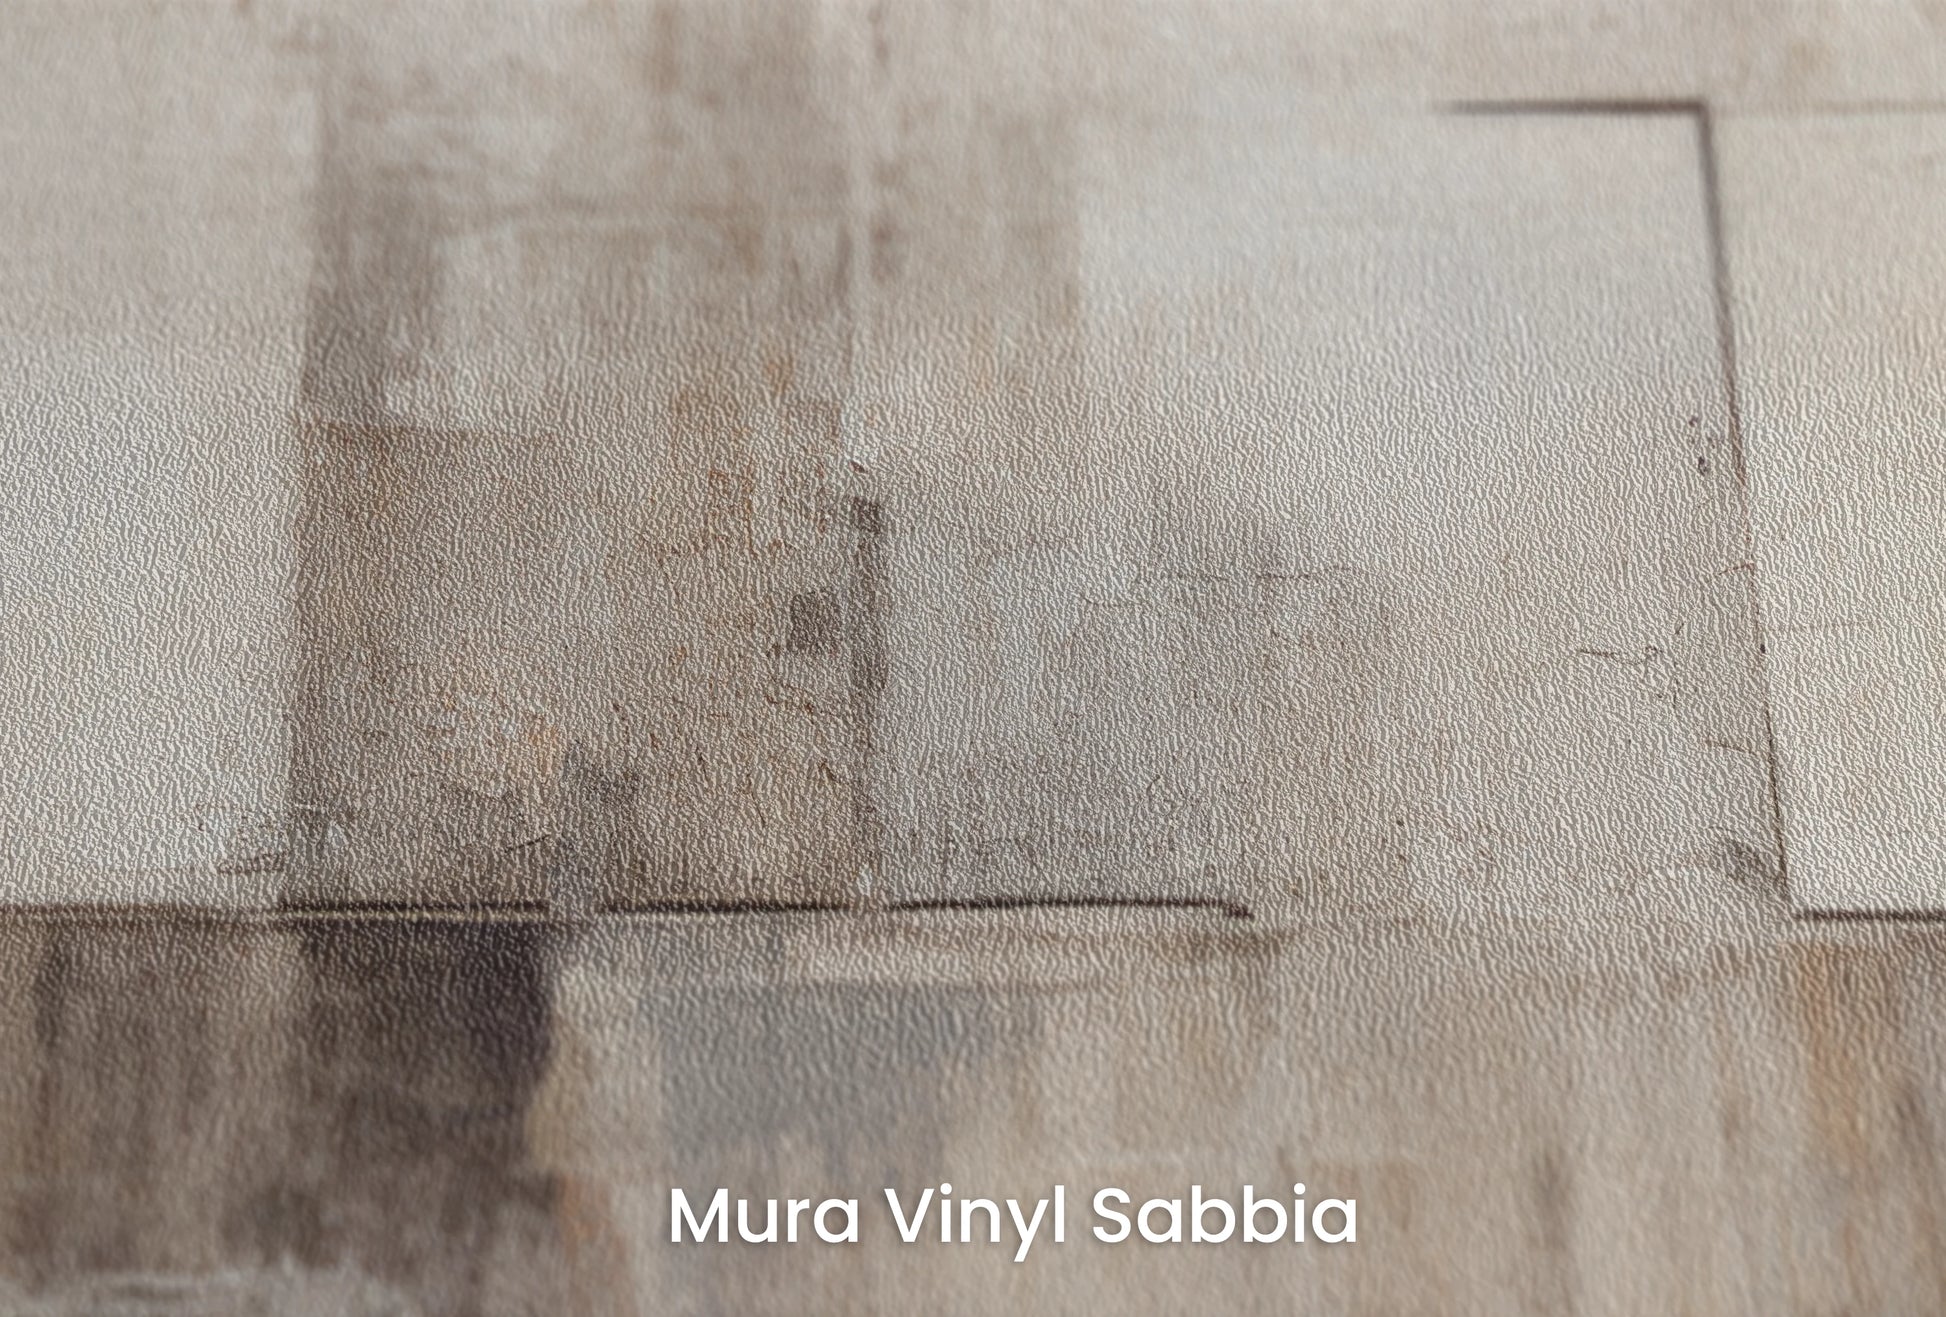 Zbliżenie na artystyczną fototapetę o nazwie Monochrome Patchwork na podłożu Mura Vinyl Sabbia struktura grubego ziarna piasku.